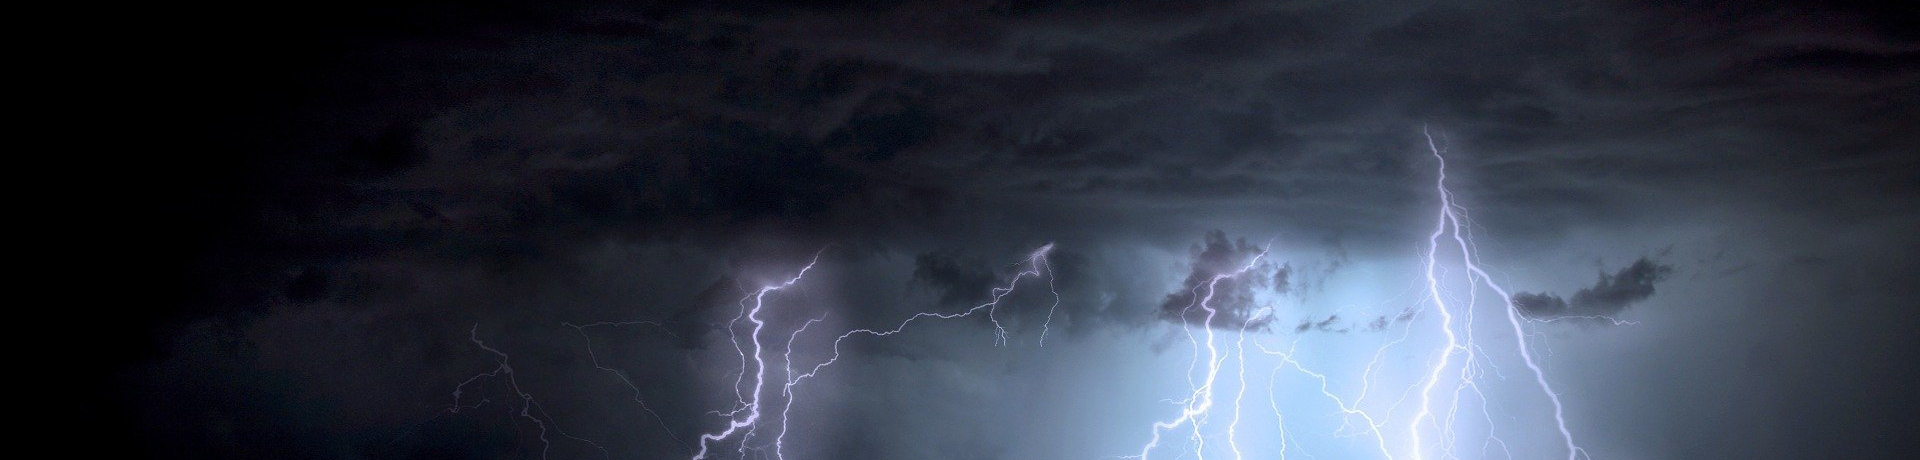 Lightning strikes in a dark night